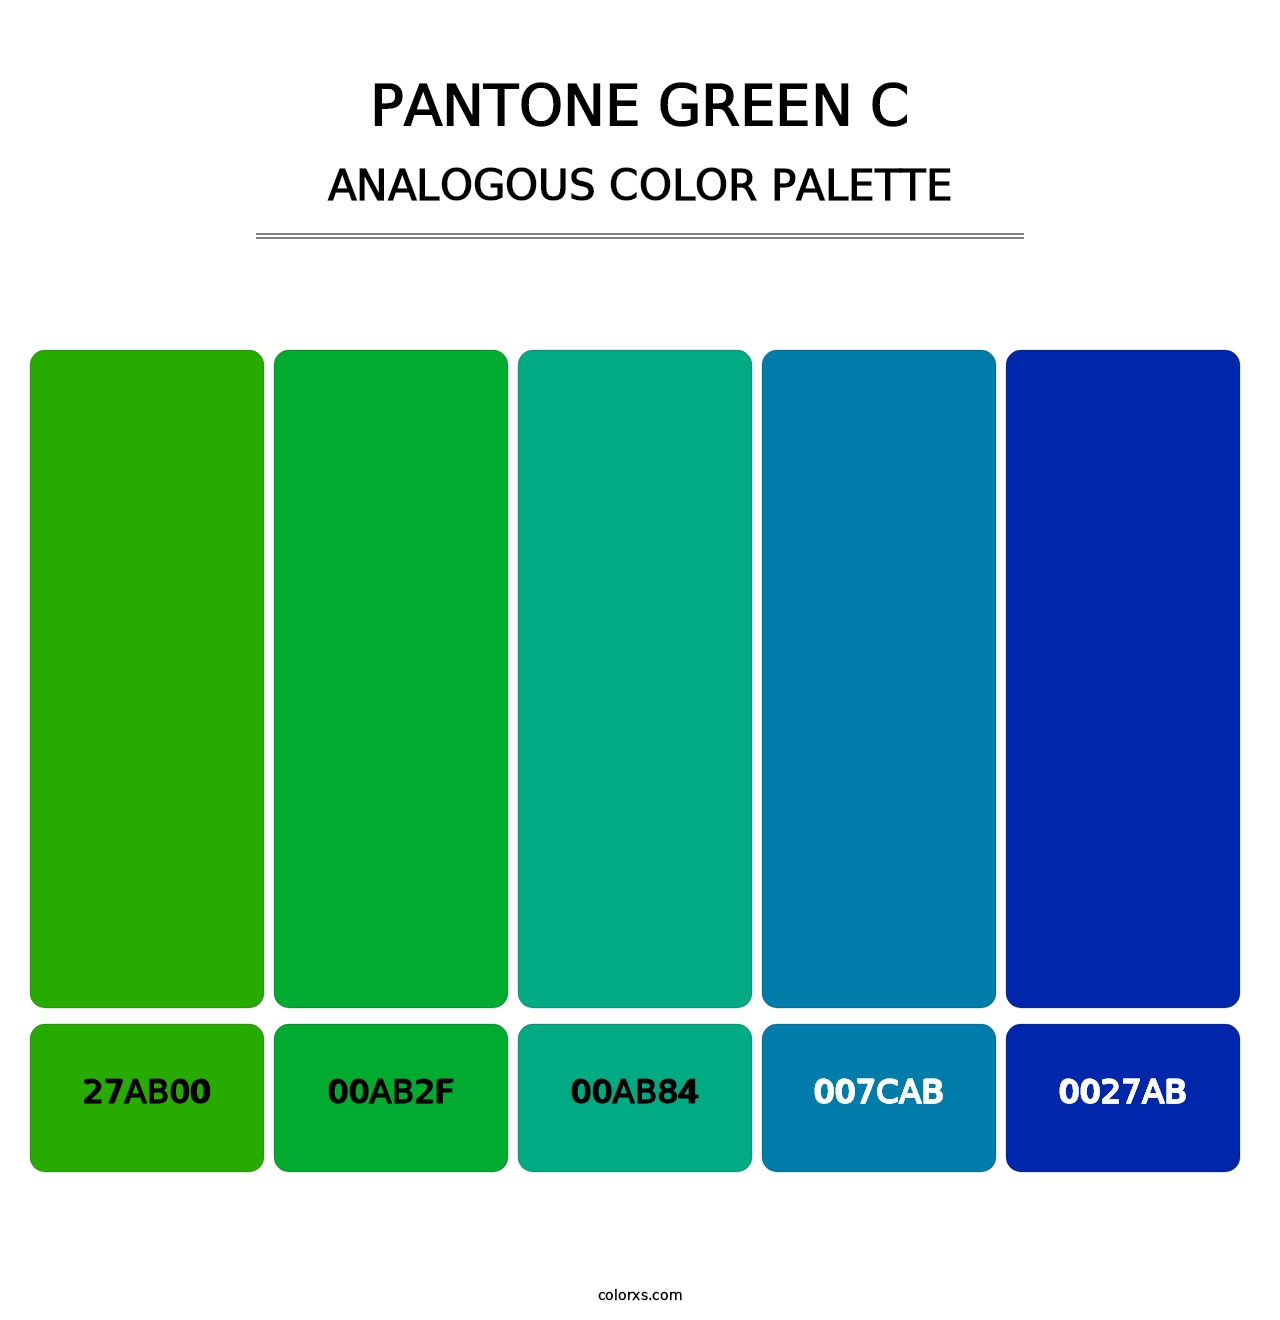 PANTONE Green C - Analogous Color Palette